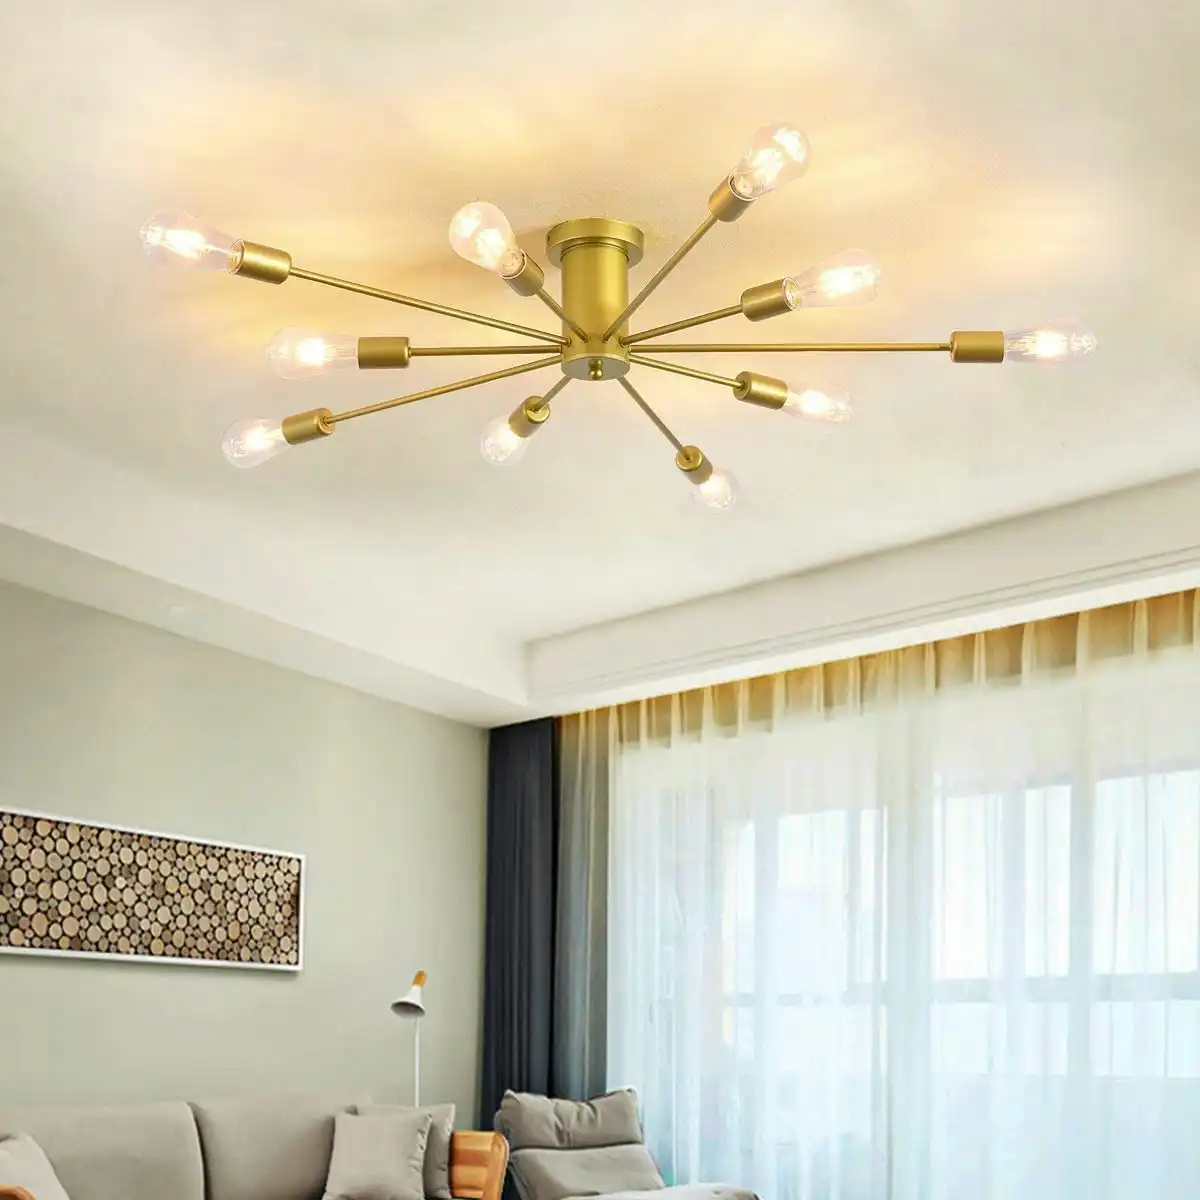 10 Lights, Modern Sputnik Ceiling Chandelier Ceiling Lamp (Gold)